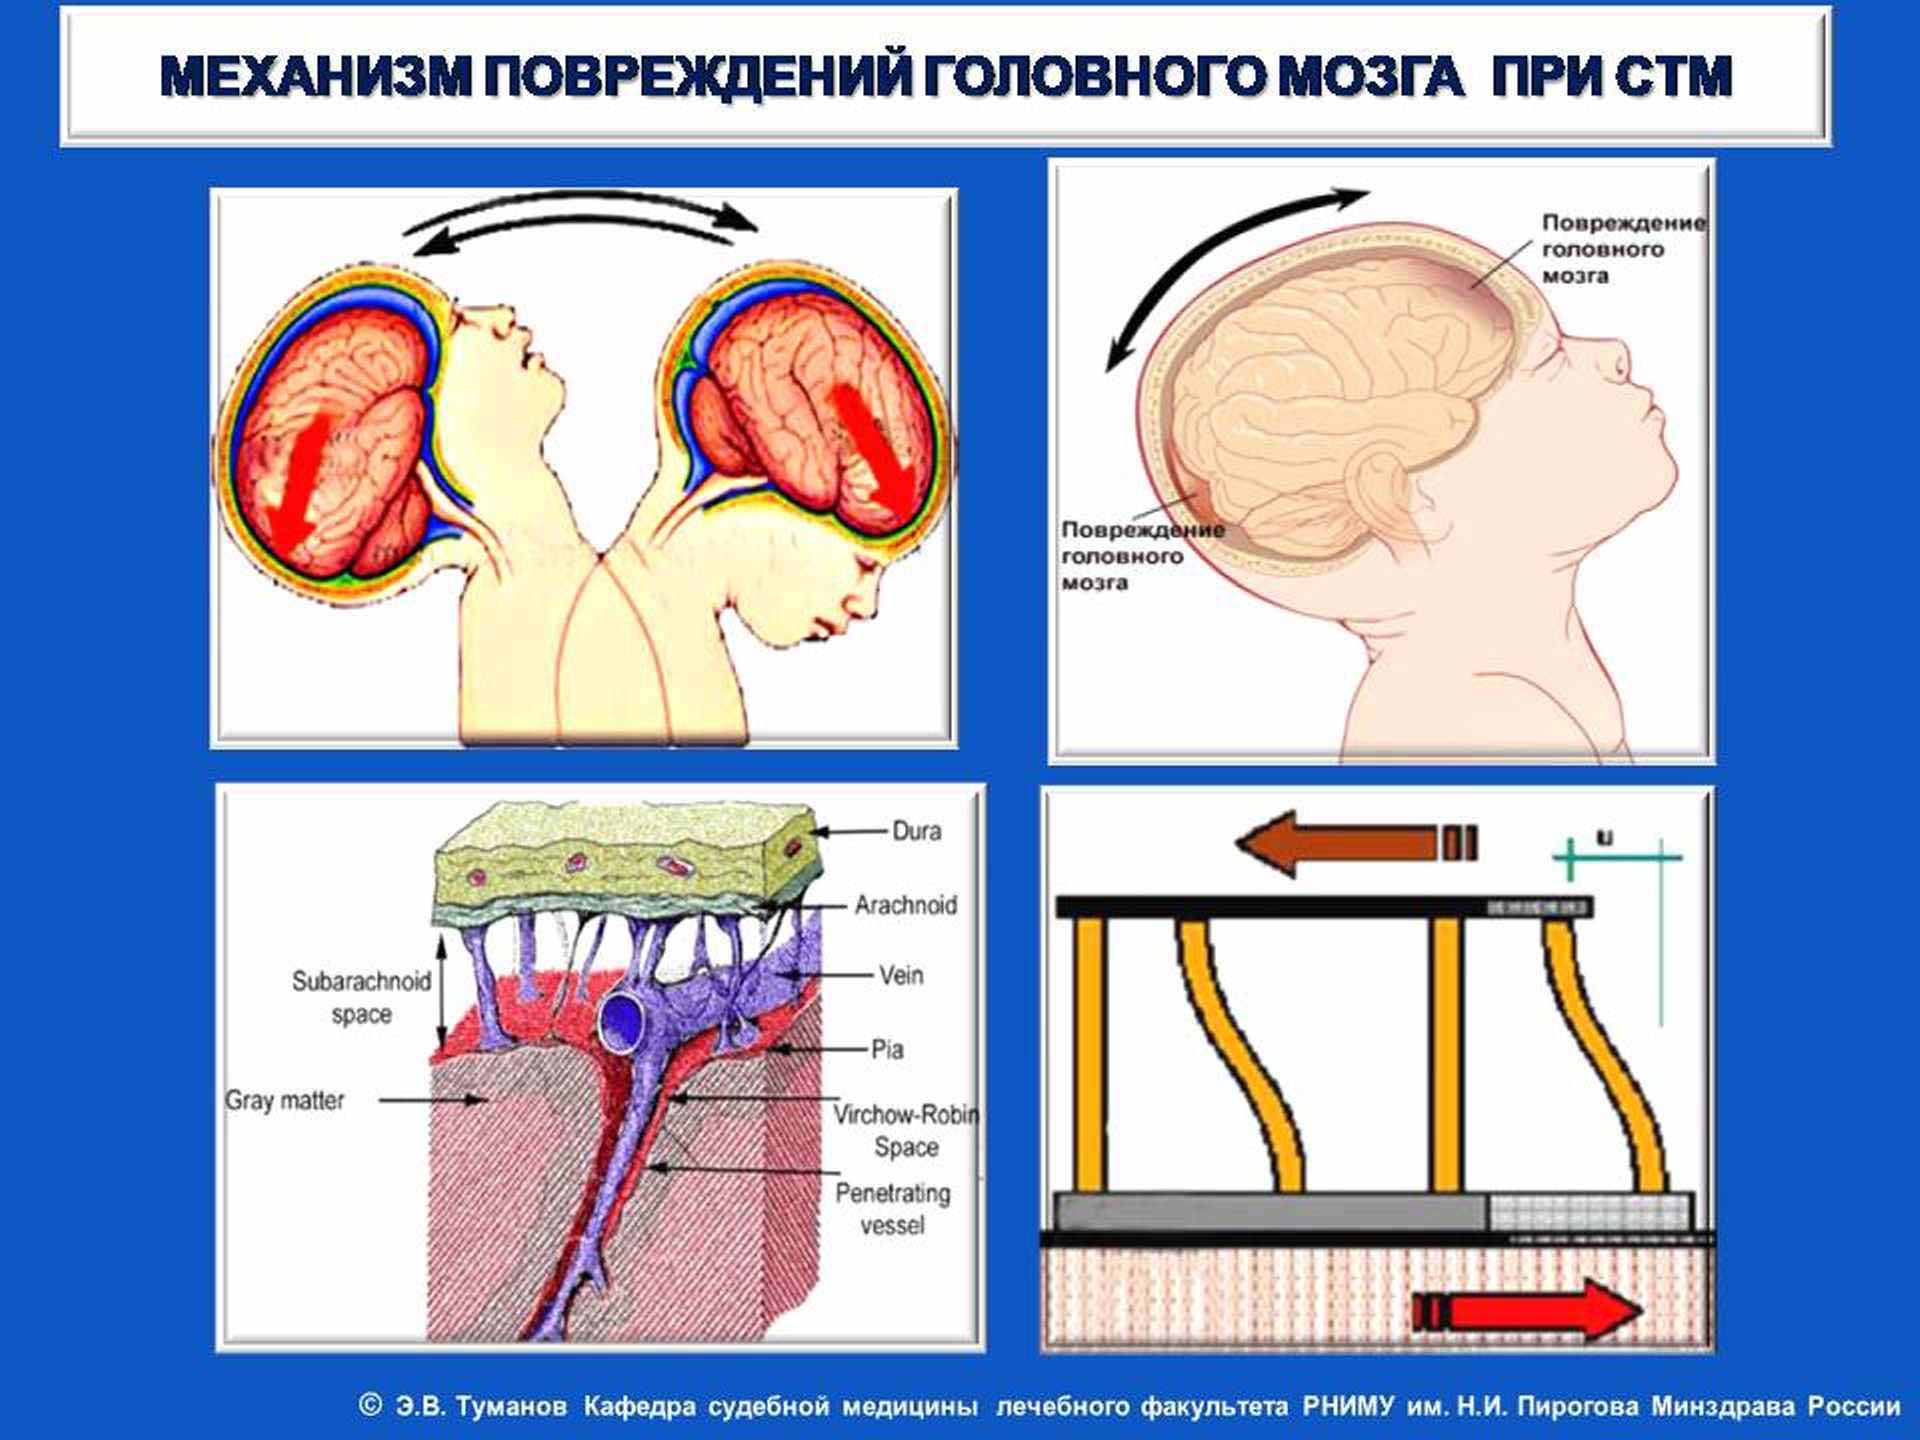 Механизм повреждений головного мозга при СТМ